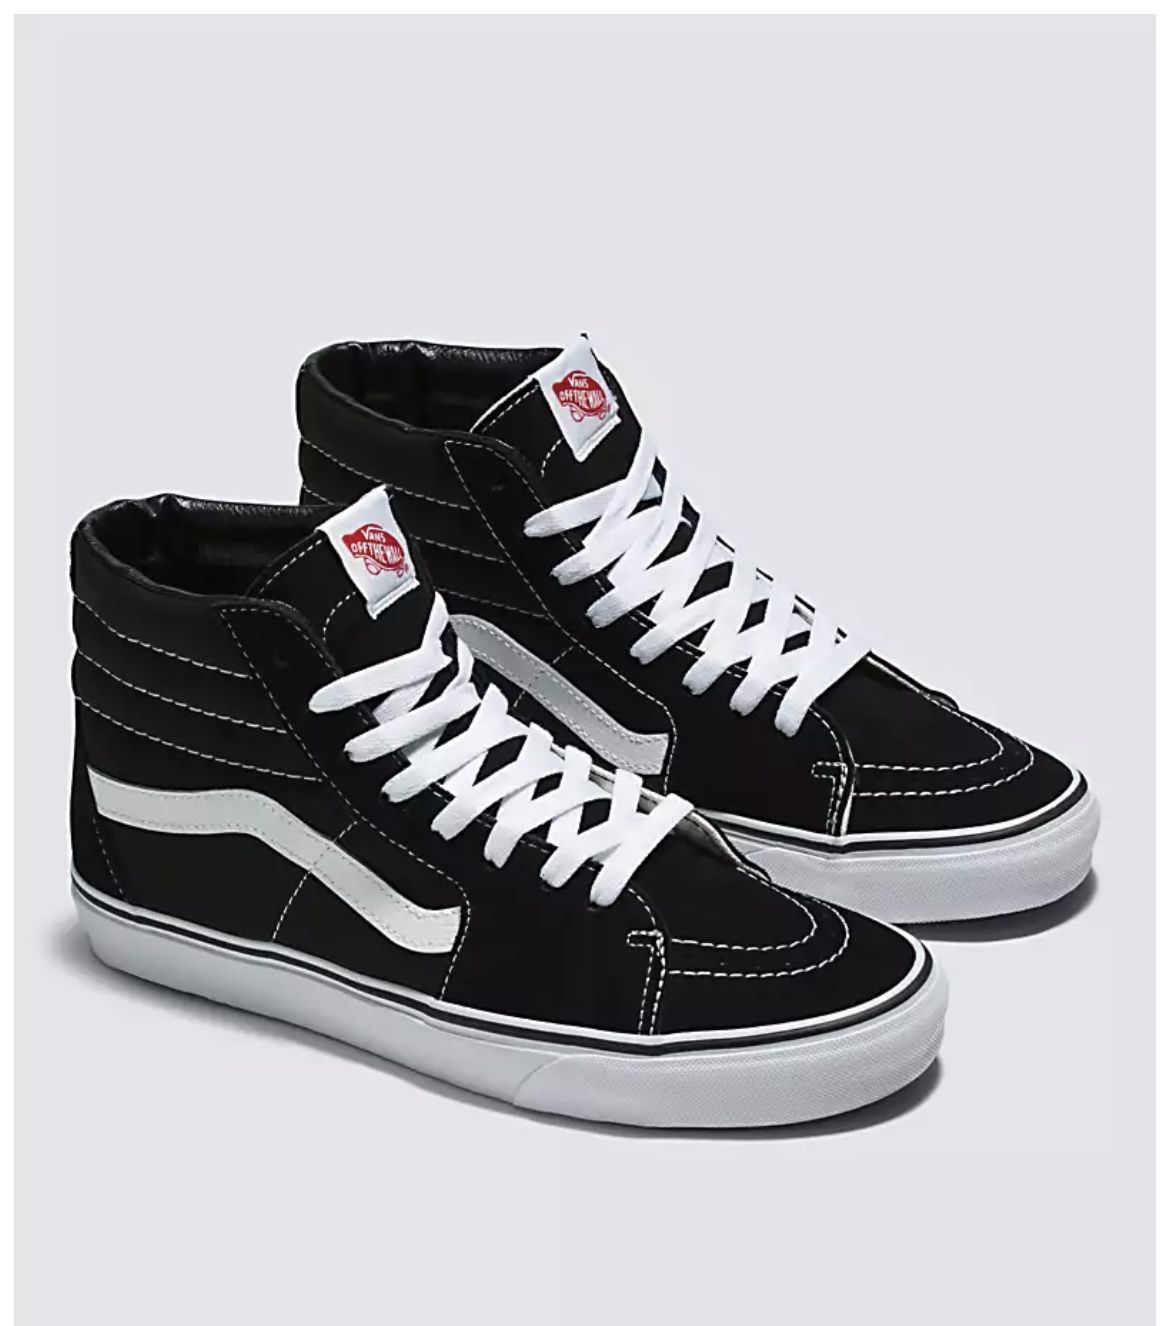 Size 9.5 Black/Black/White Sk8-Hi Shoe